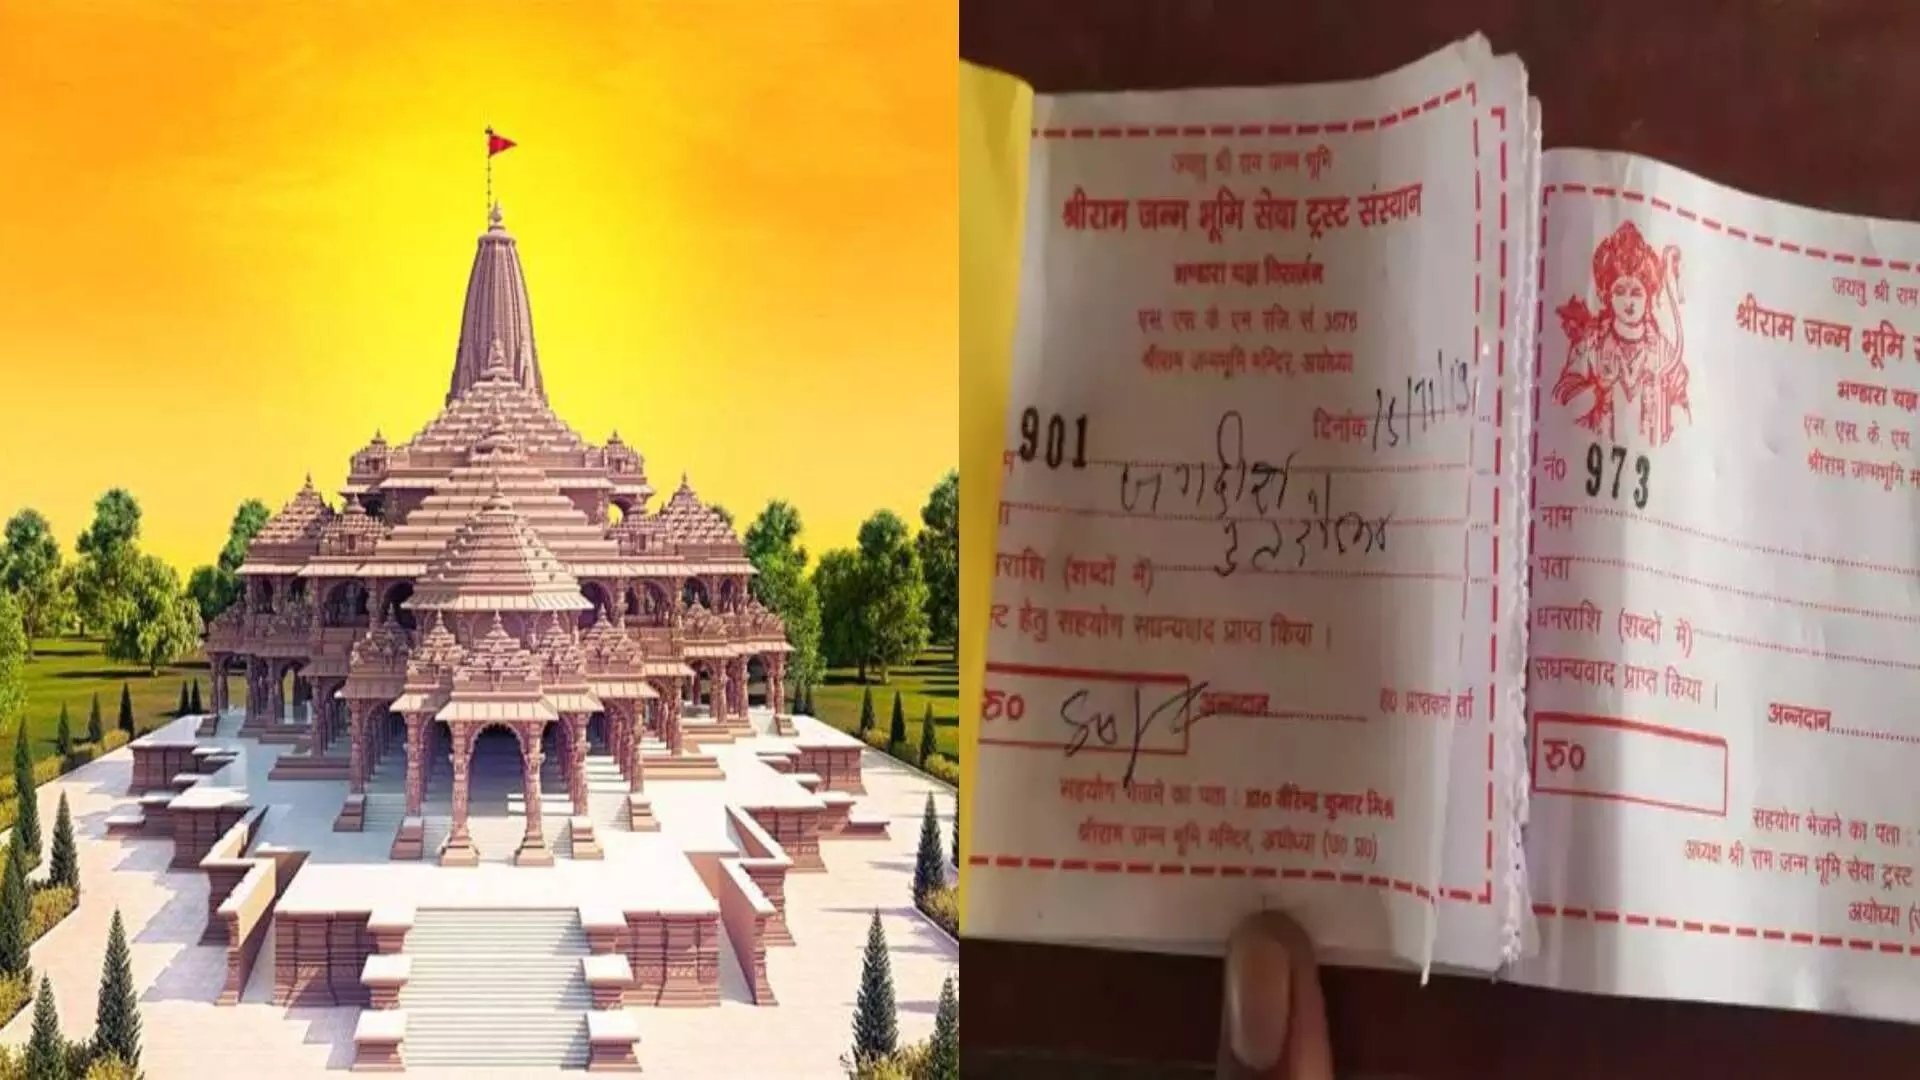 राम मंदिराच्या नावाने पैसा गोळा करणाऱ्यांना पायबंद घाला – मुग्धा कर्णिक